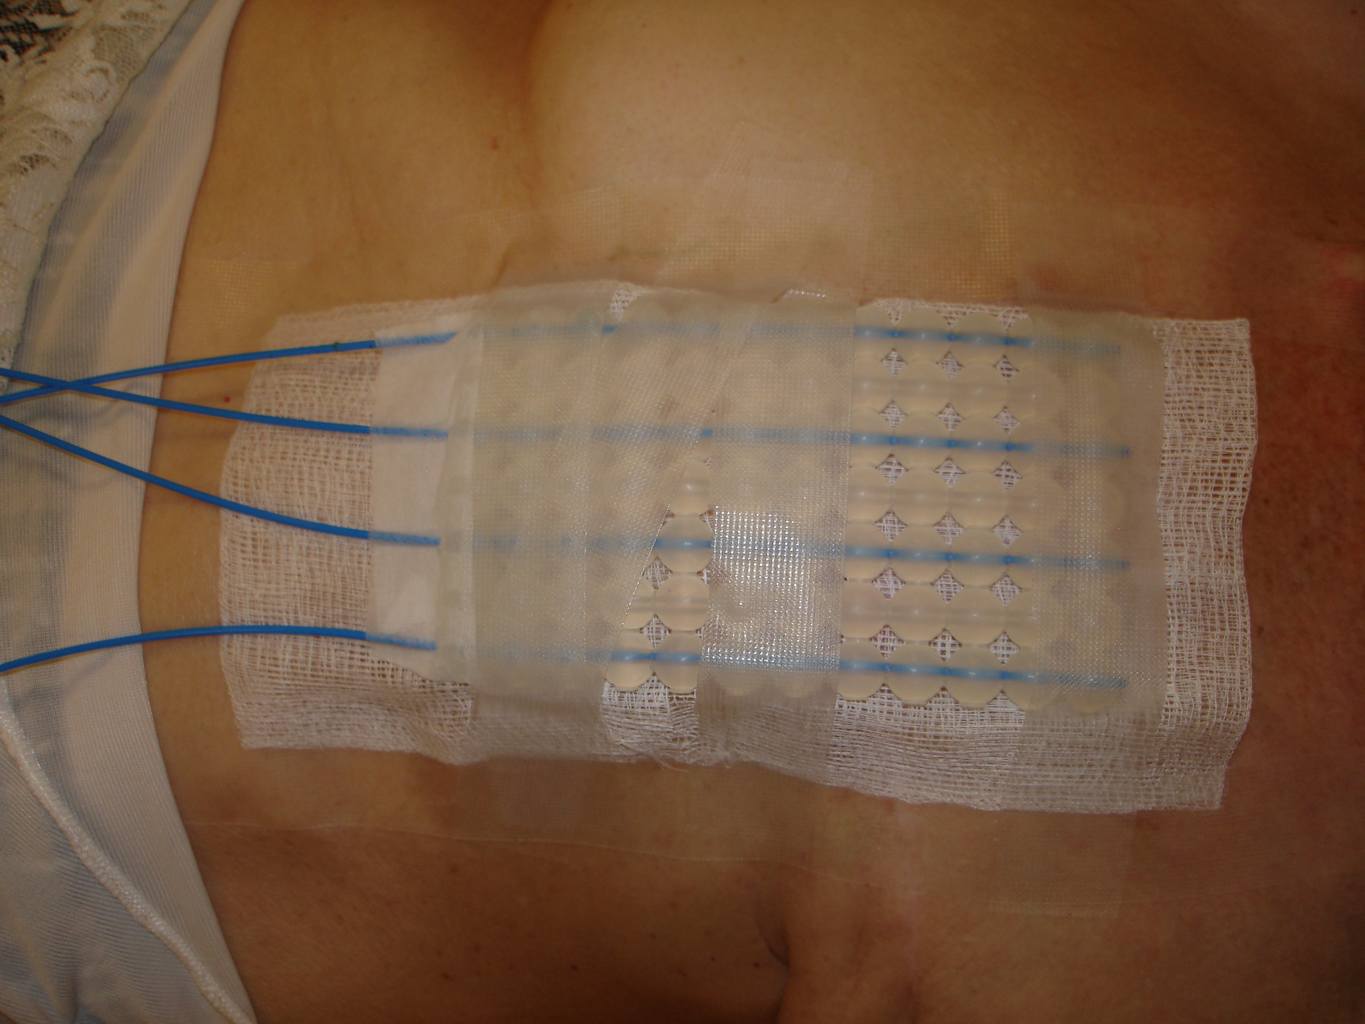 Aplikator do brachyterapii kontaktowej - cewniki typu French mocowane w aplikatorze Freiburg (kulki), przymocowany w okolicy napromienianej